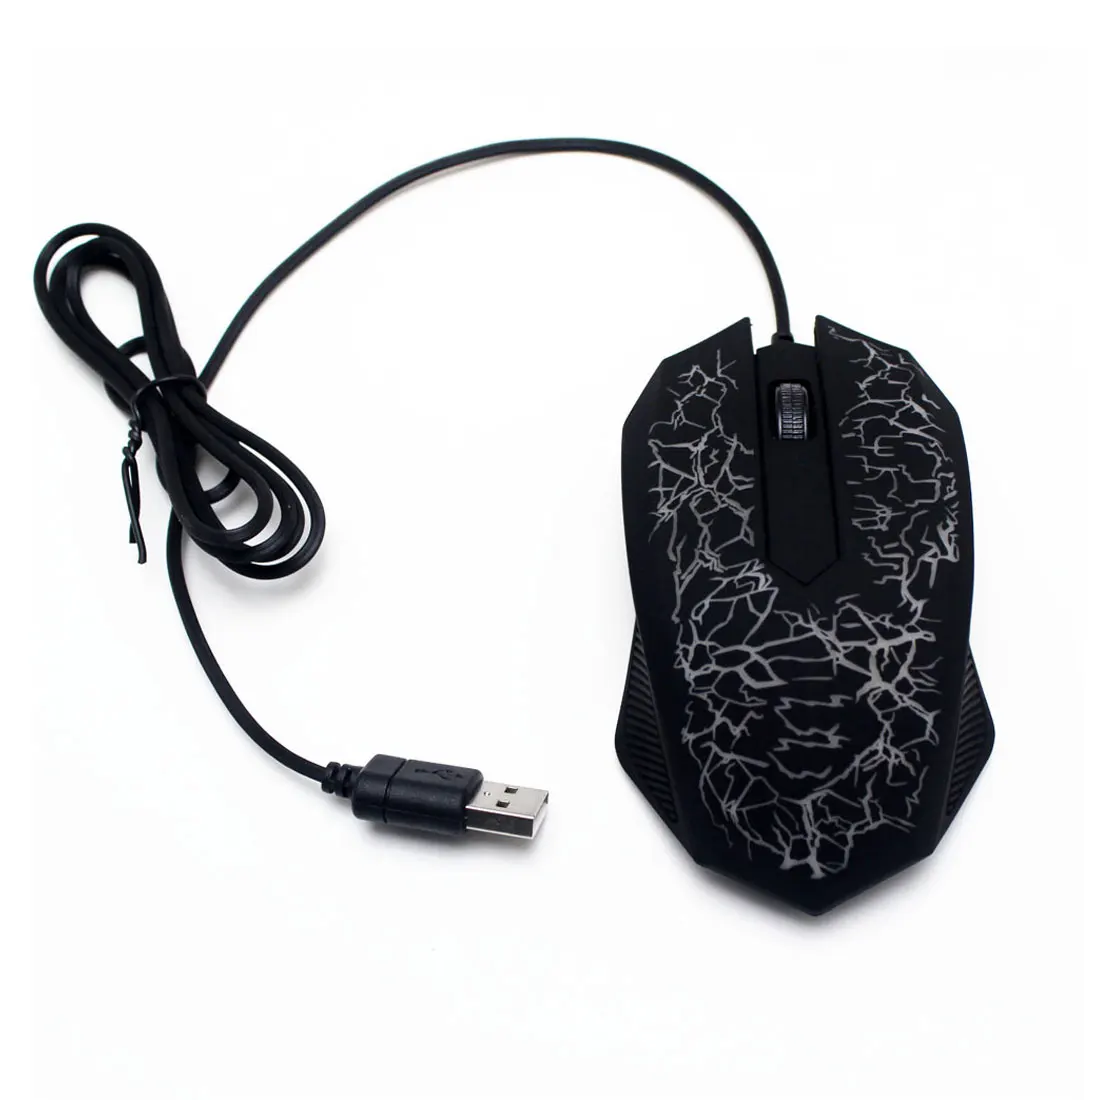 USB проводной игровой Мышь световой компьютер Gamer 3 кнопки светодиодный небольшие специальные 3D в форме Портативный